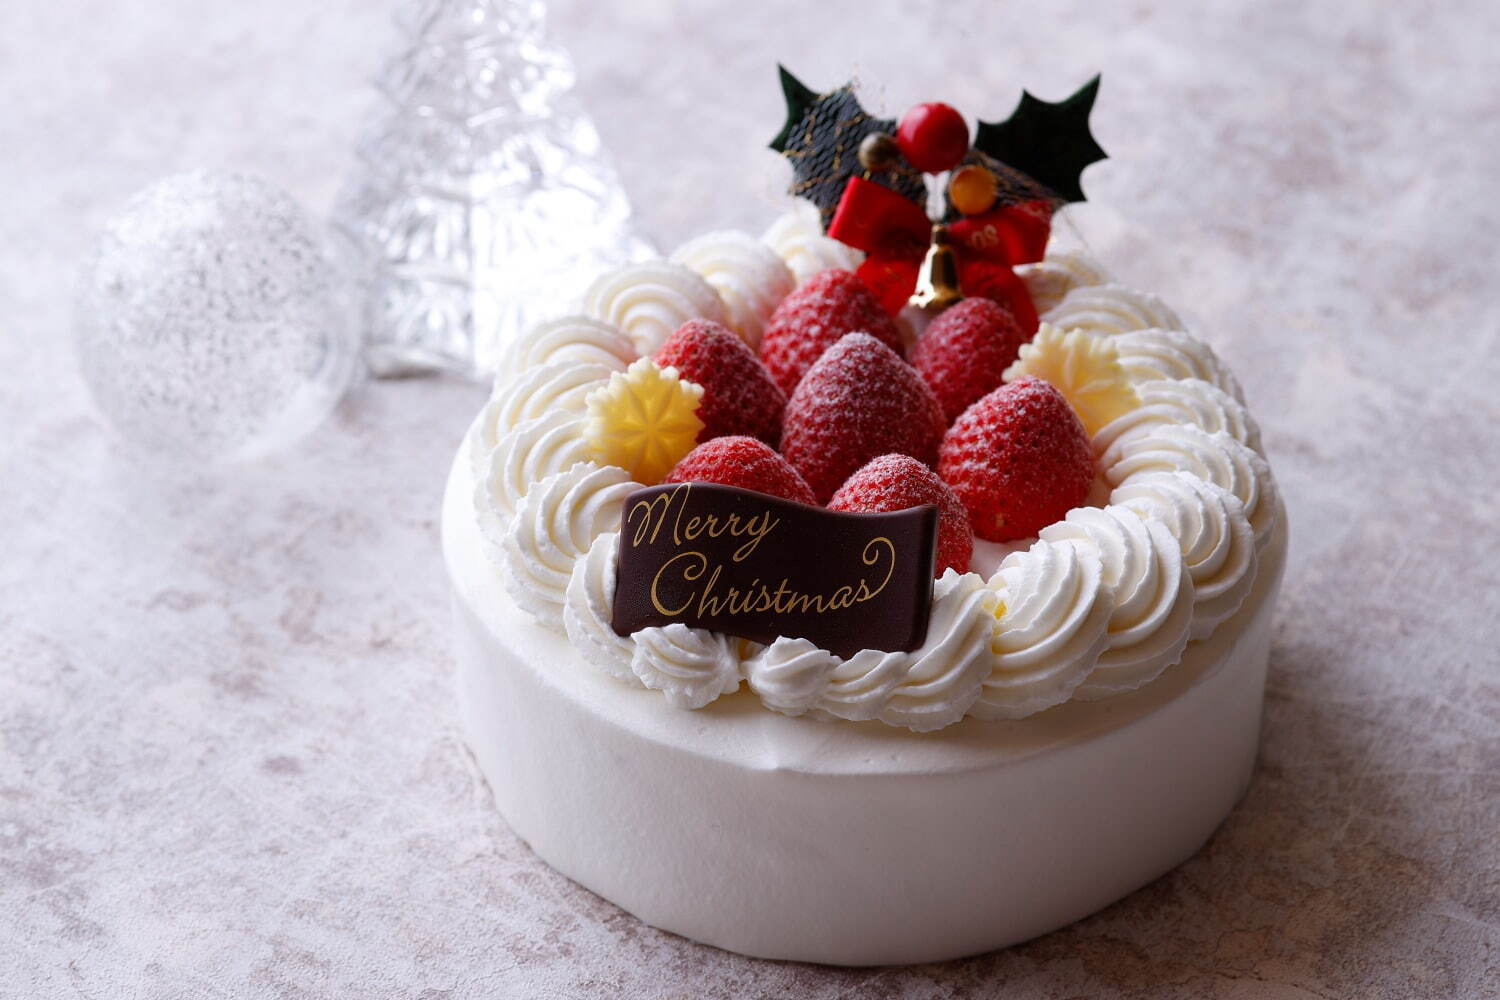 「苺のクリスマスケーキ」直径約15cm×高さ約8cm 6,480円